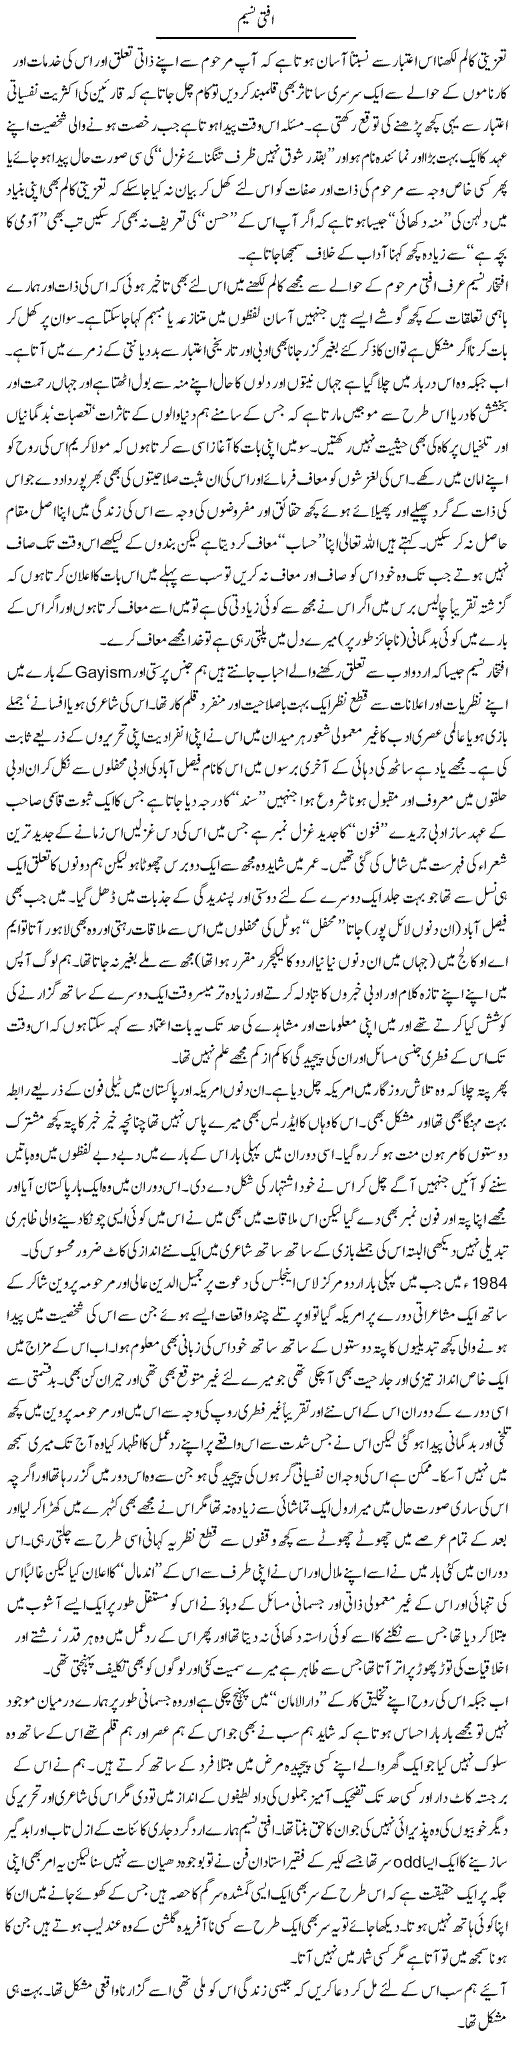 Iftikhar Naseem Express Column Amjad Islam 7 August 2011